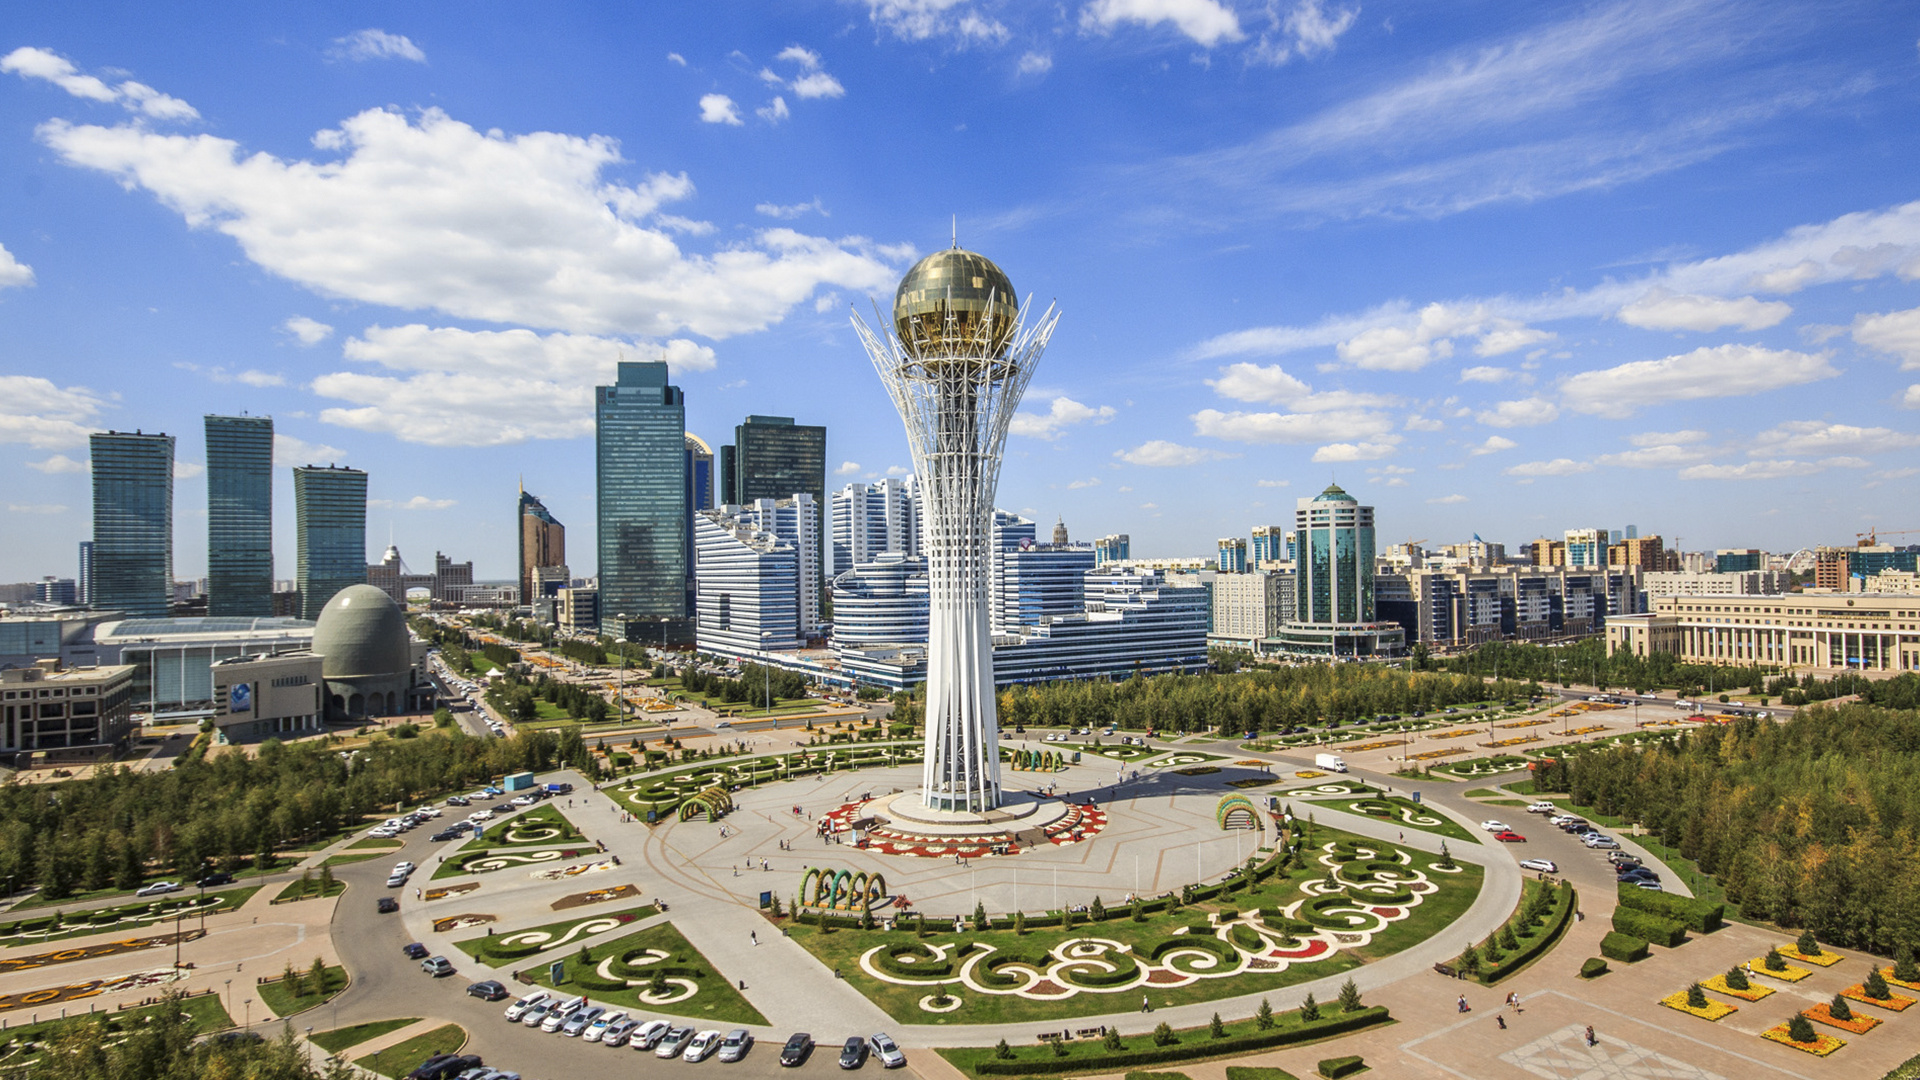 Kazakhstan travel, Nur-Sultan city, Historical sites, Cultural exploration, 1920x1080 Full HD Desktop